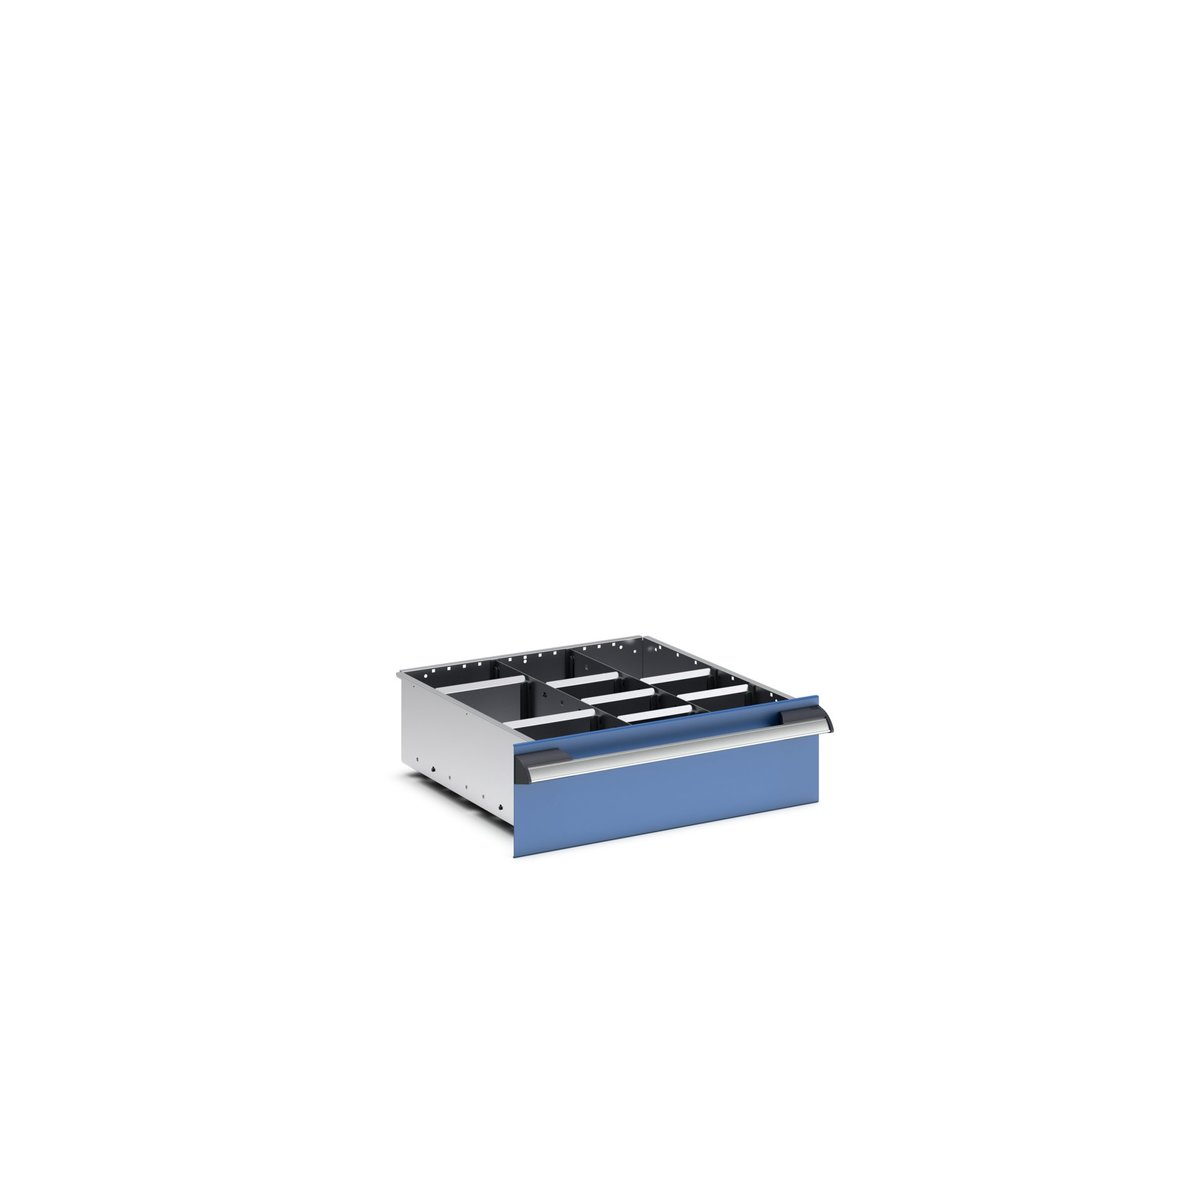 43020713.51 - cubio adjustable divider kit